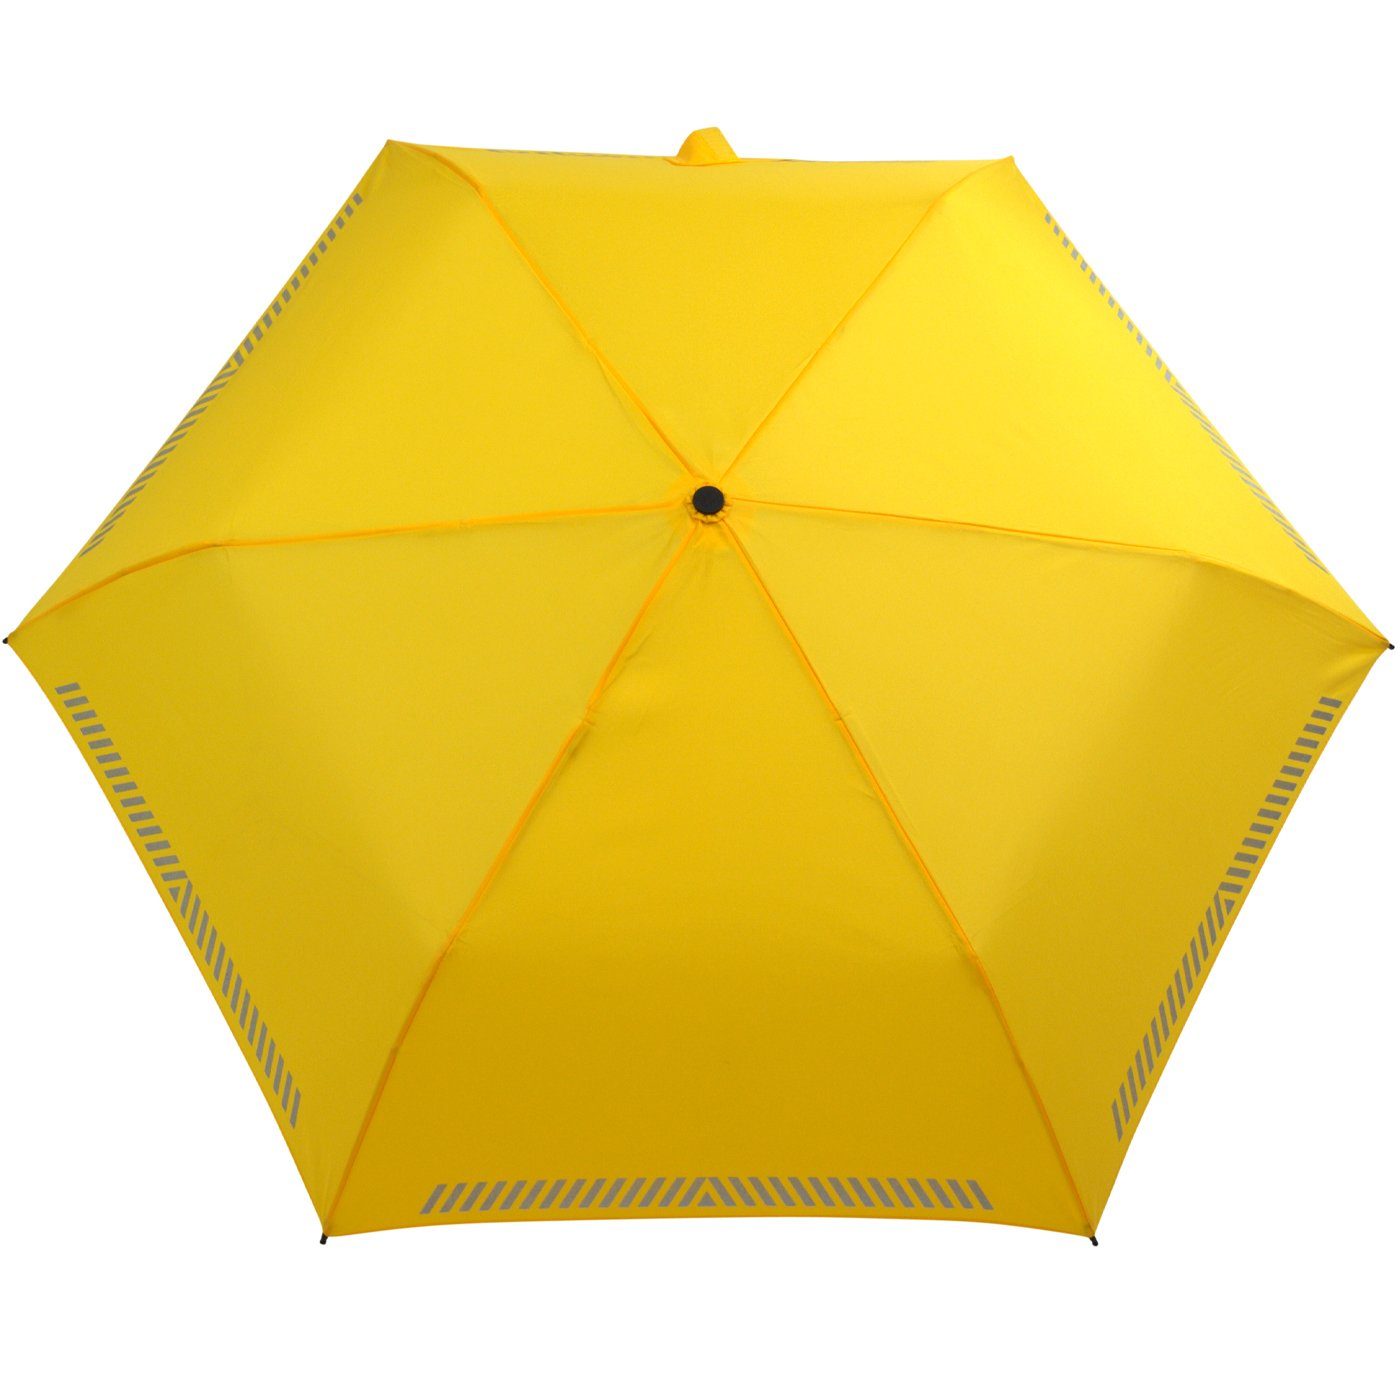 gelb Sicherheit Reflex-Streifen Auf-Zu-Automatik, reflektierend, Kinderschirm iX-brella Taschenregenschirm durch mit -